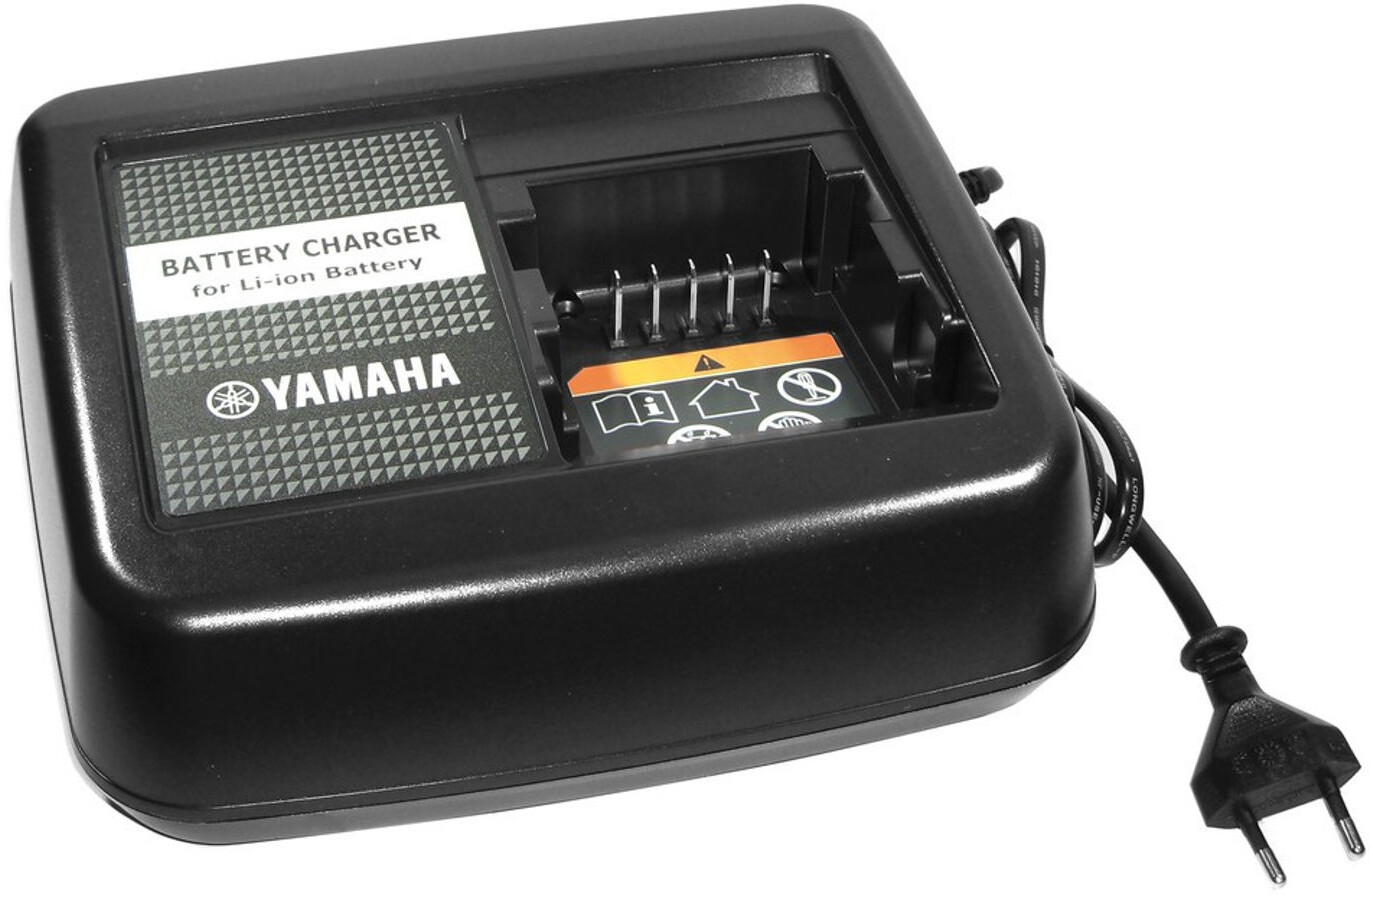 Стационарный зарядное устройство. Yamaha Bicycle Battery. Зарядное устройство Yamaha. Стационарная зарядка. Батарея Yamaha для велосипеда.